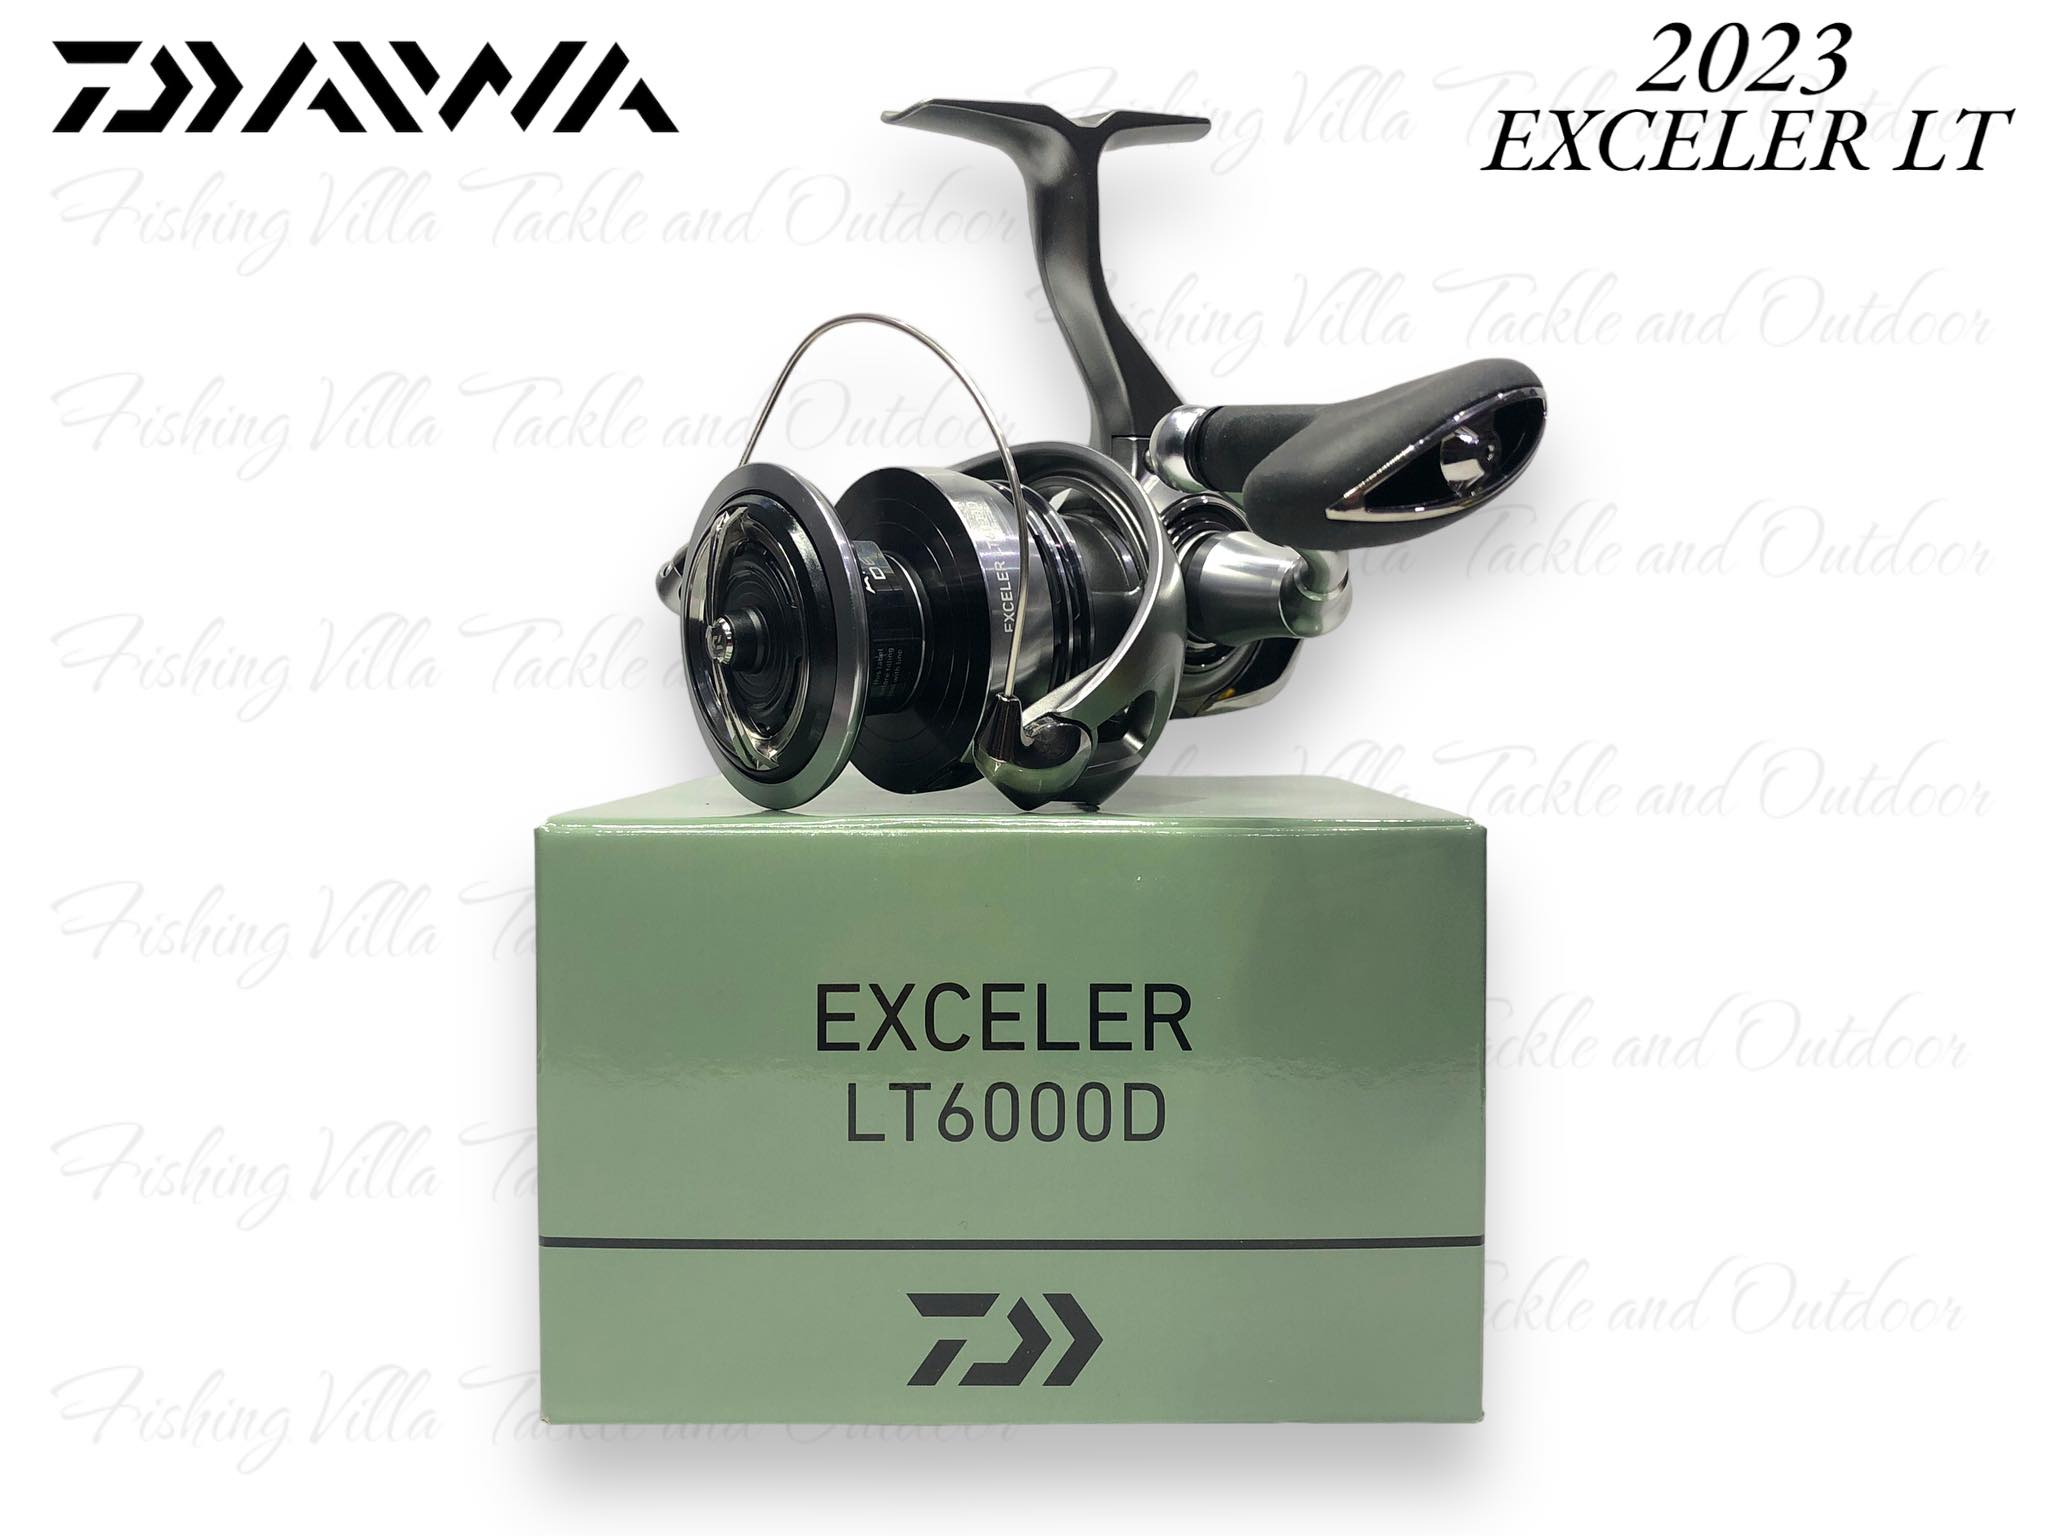 2023 Daiwa Exceler LT Spinning Reels